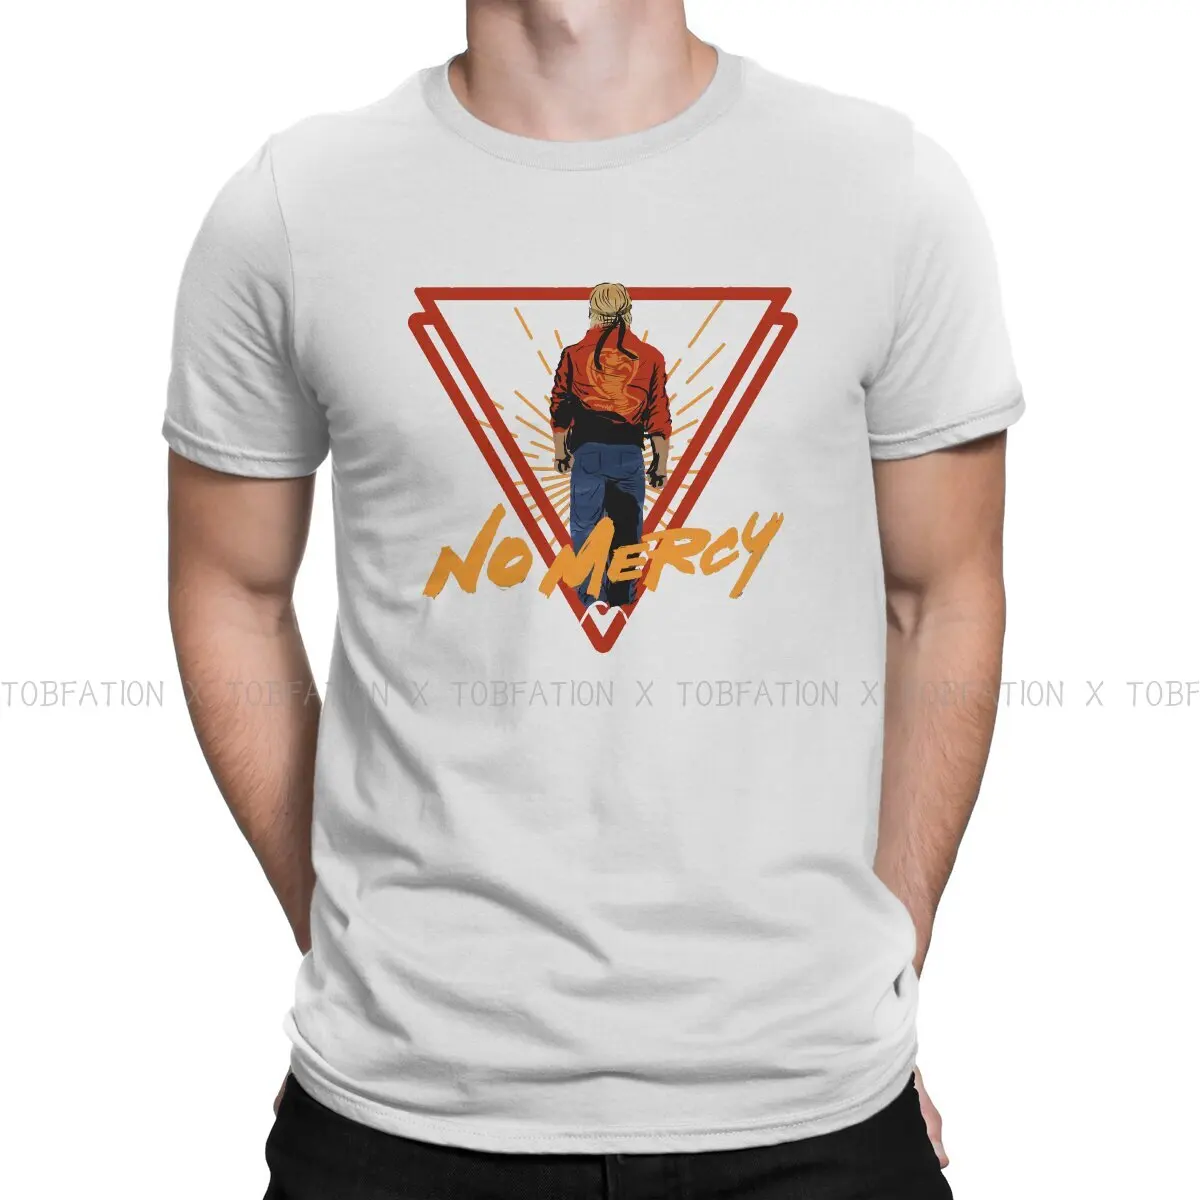 Cobra Kai Man TShirt Miyagi-Do Karate No Mercy  Fashion T Shirt Original Sweatshirts New Trend